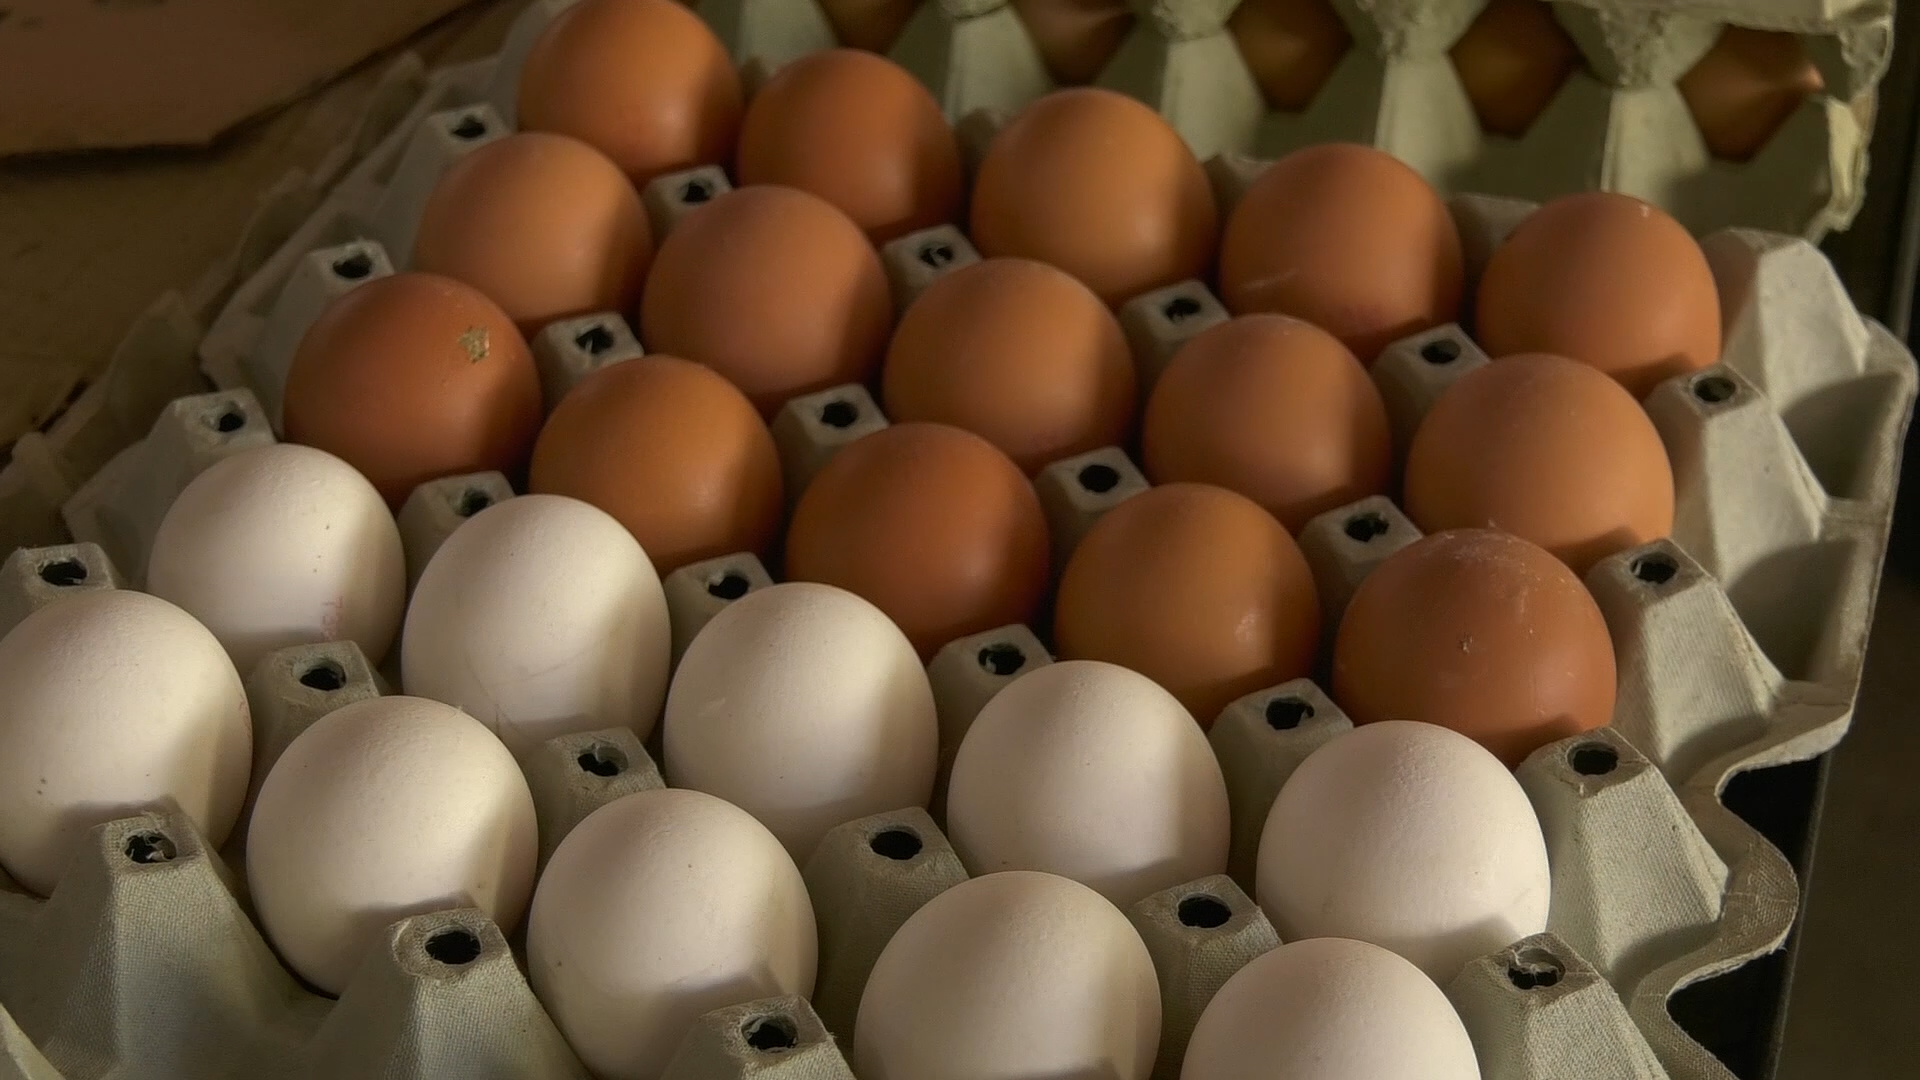 Šarenolika cena jaja pred Uskrs